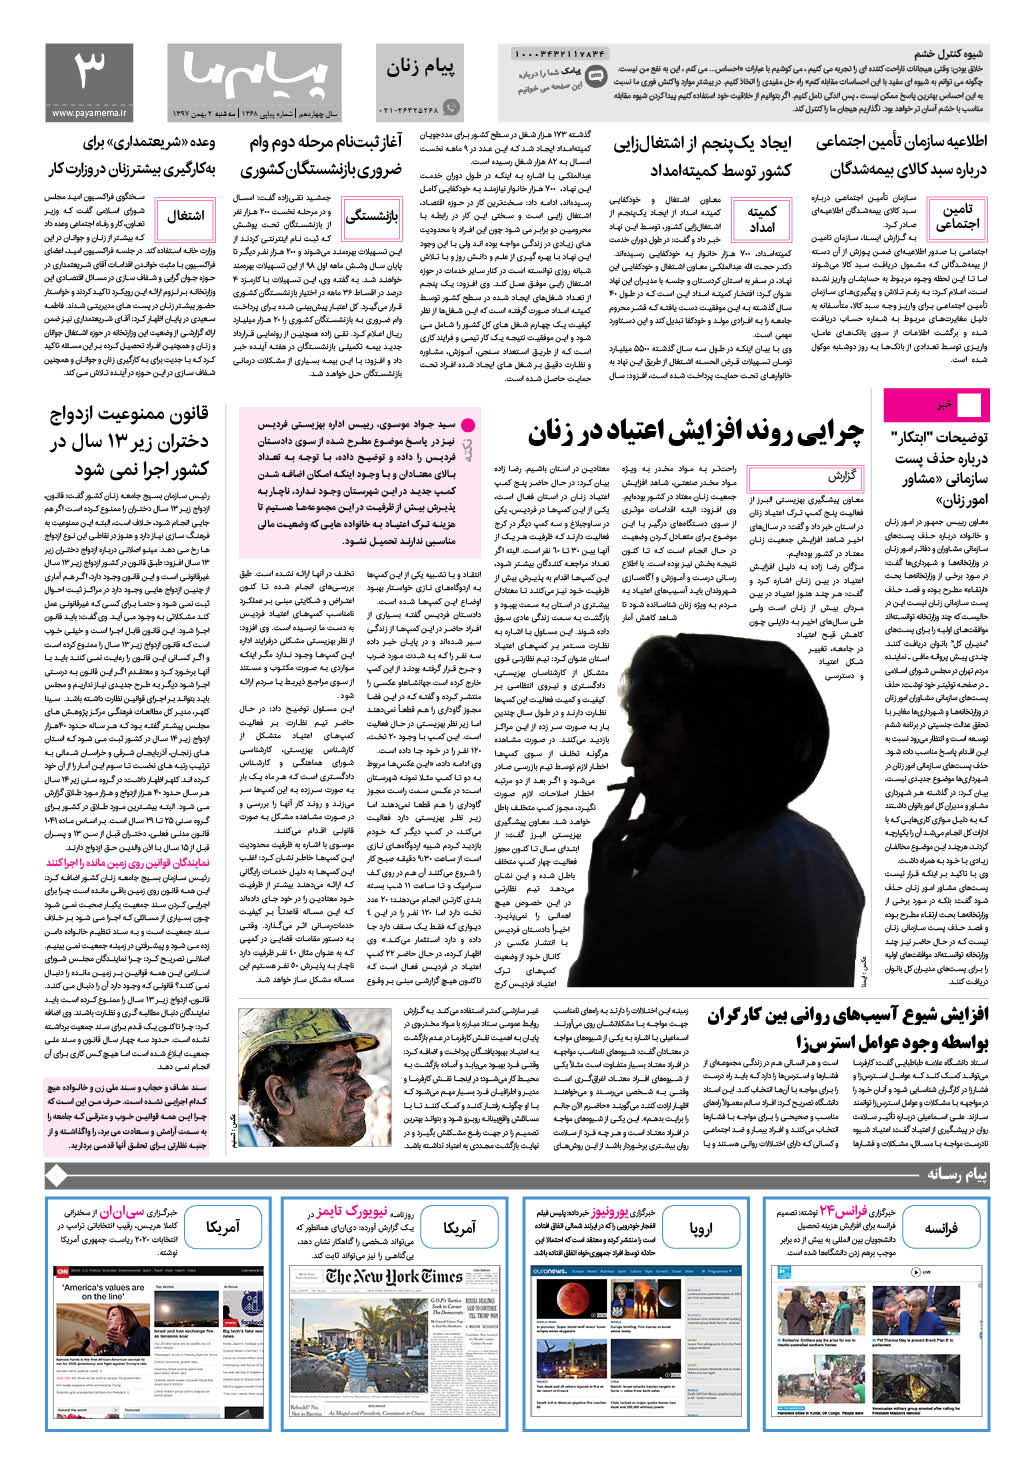 صفحه پیام زنان شماره 1368 روزنامه پیام ما